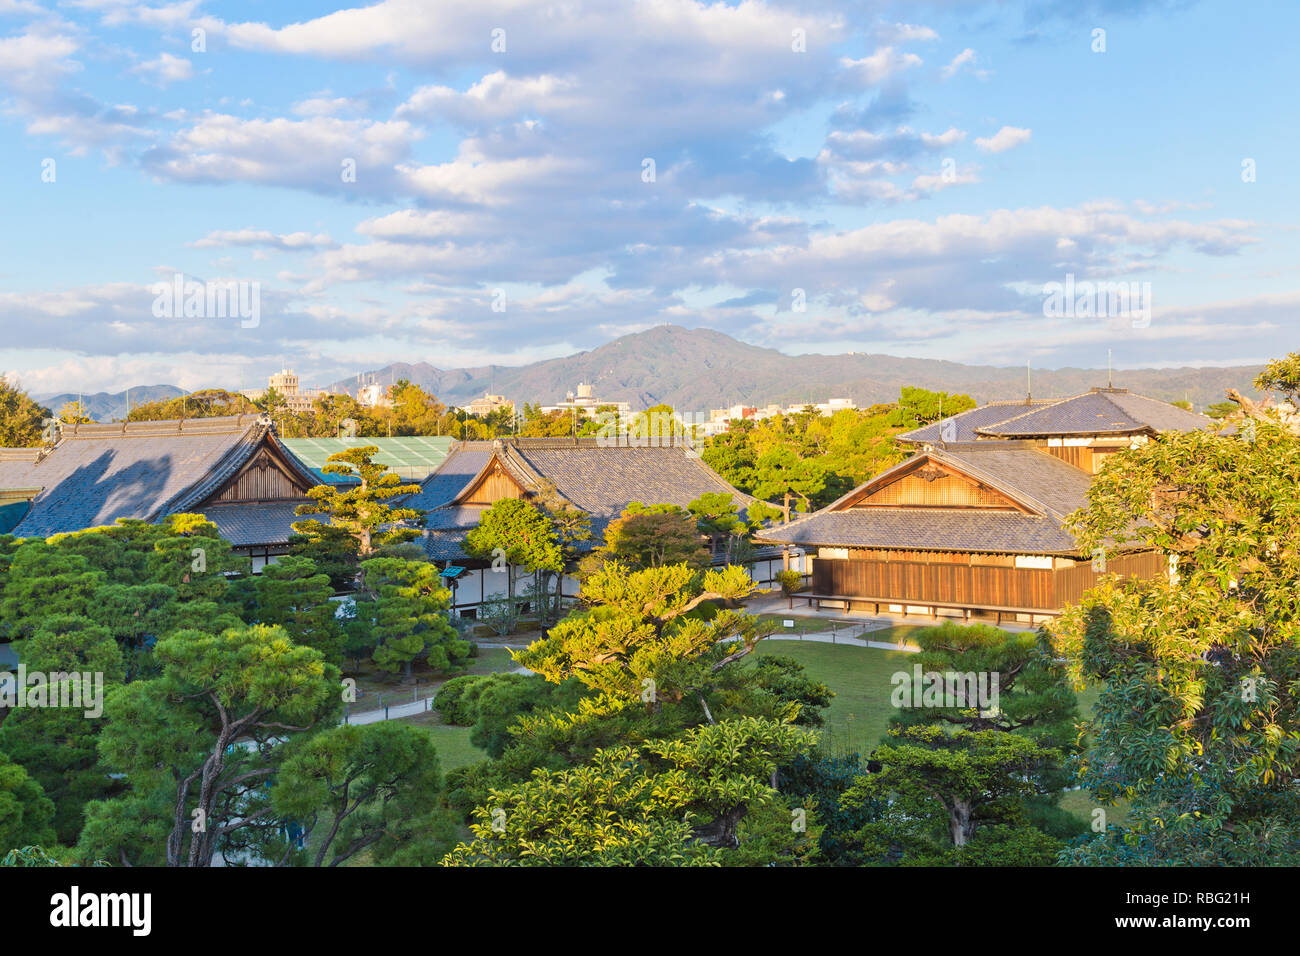 Ninomaru Garden in grounds of Nijo Castle in Kyoto Japan Stock Photo